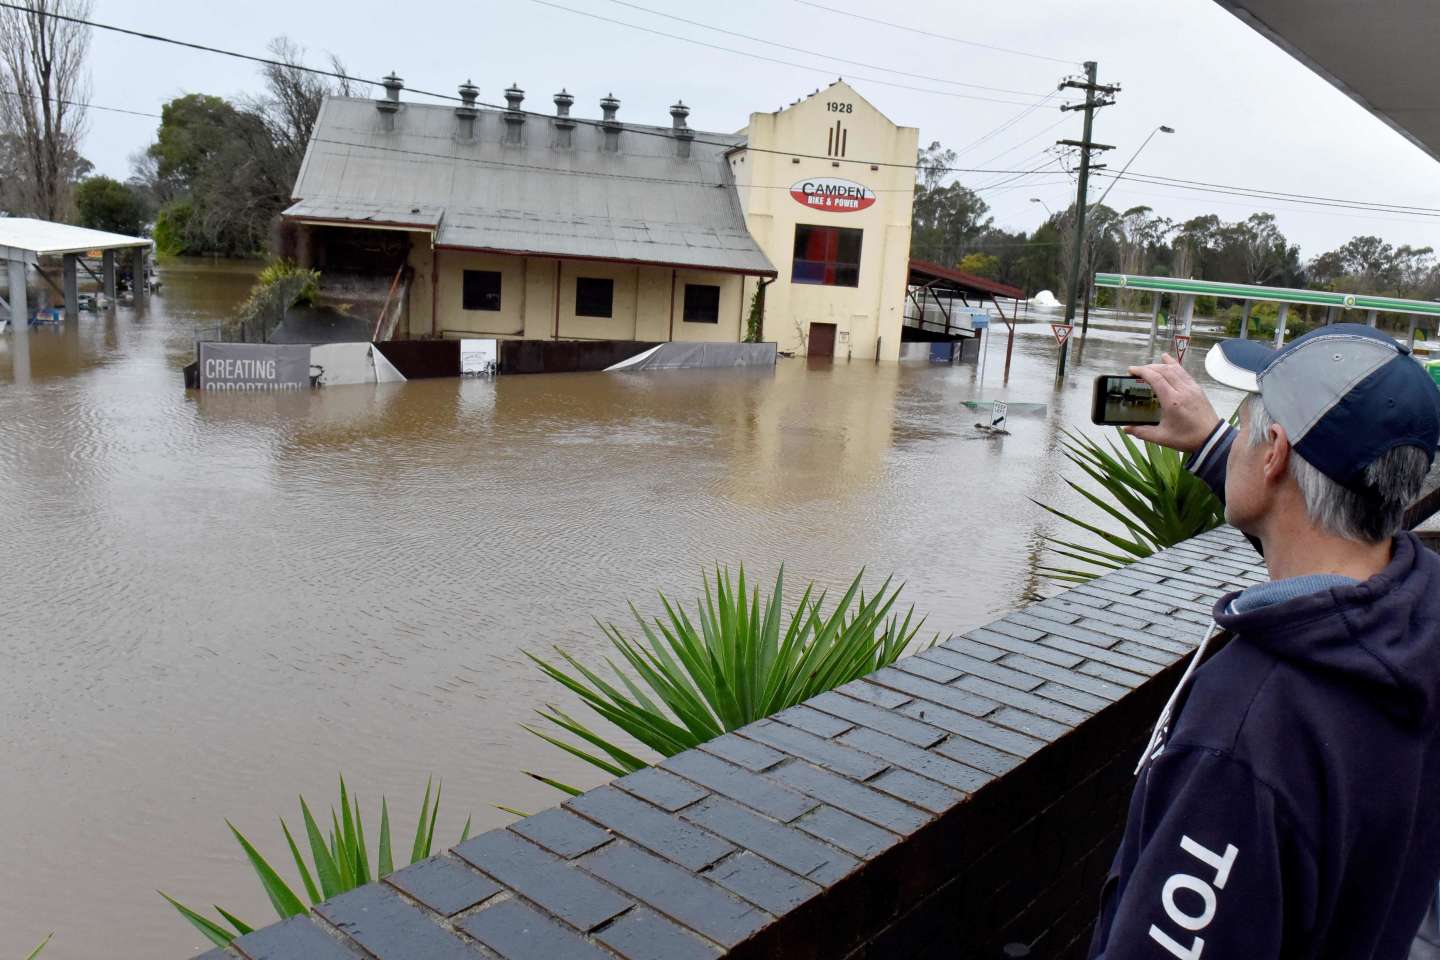 A Sydney, des milliers d’habitants appelés à évacuer leurs domiciles à cause des inondations